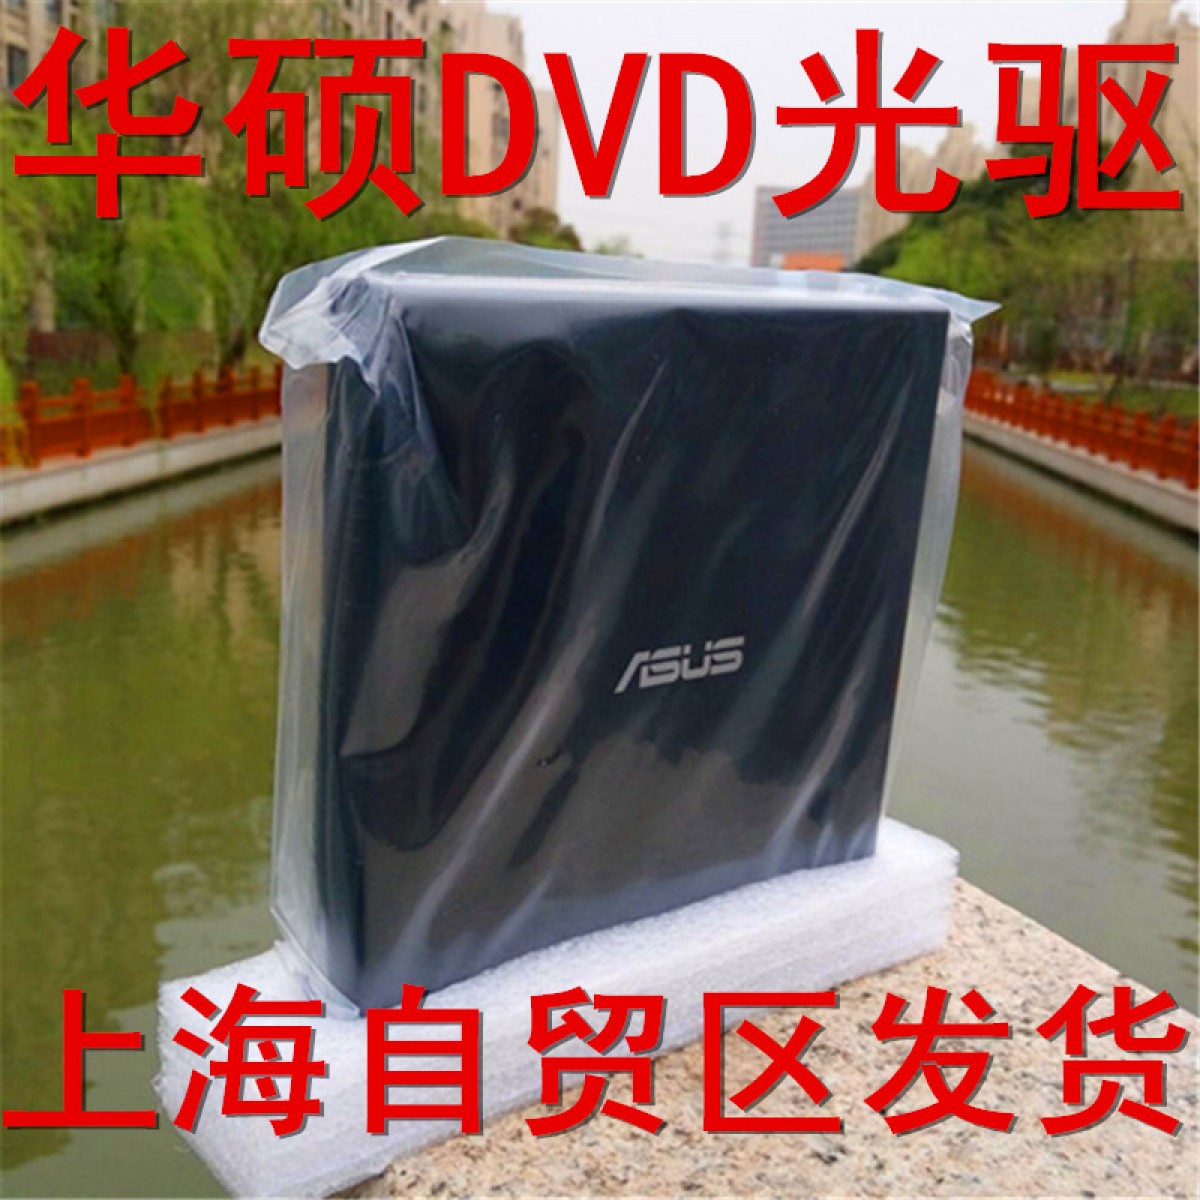 ASUS华硕USB外置DVD光驱联想惠普台式机笔记本一体机电脑通用读碟